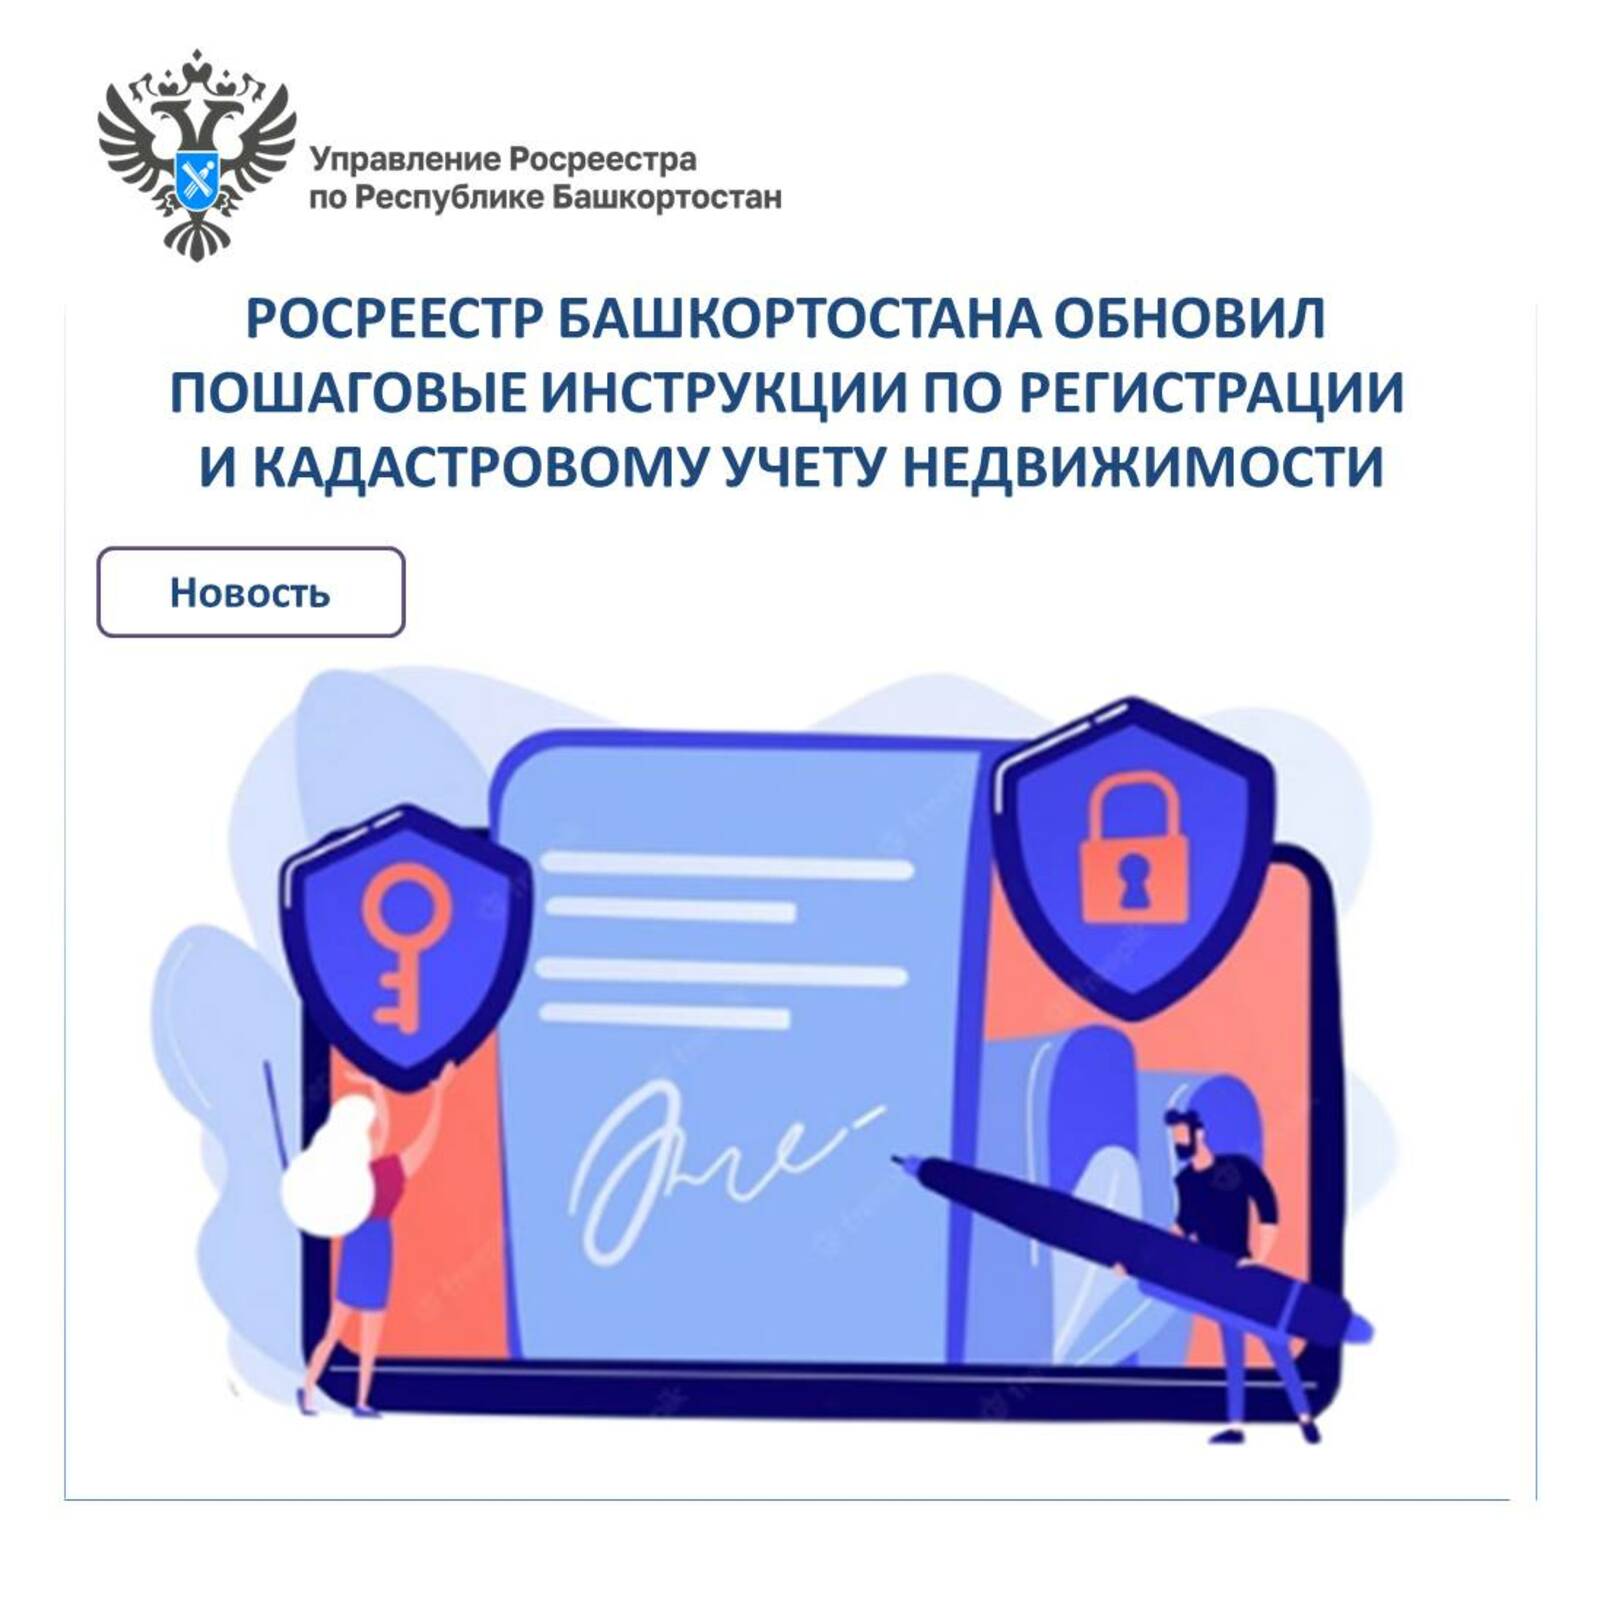 Росреестр Башкортостана обновил пошаговые инструкции по регистрации и кадастровому учету недвижимости